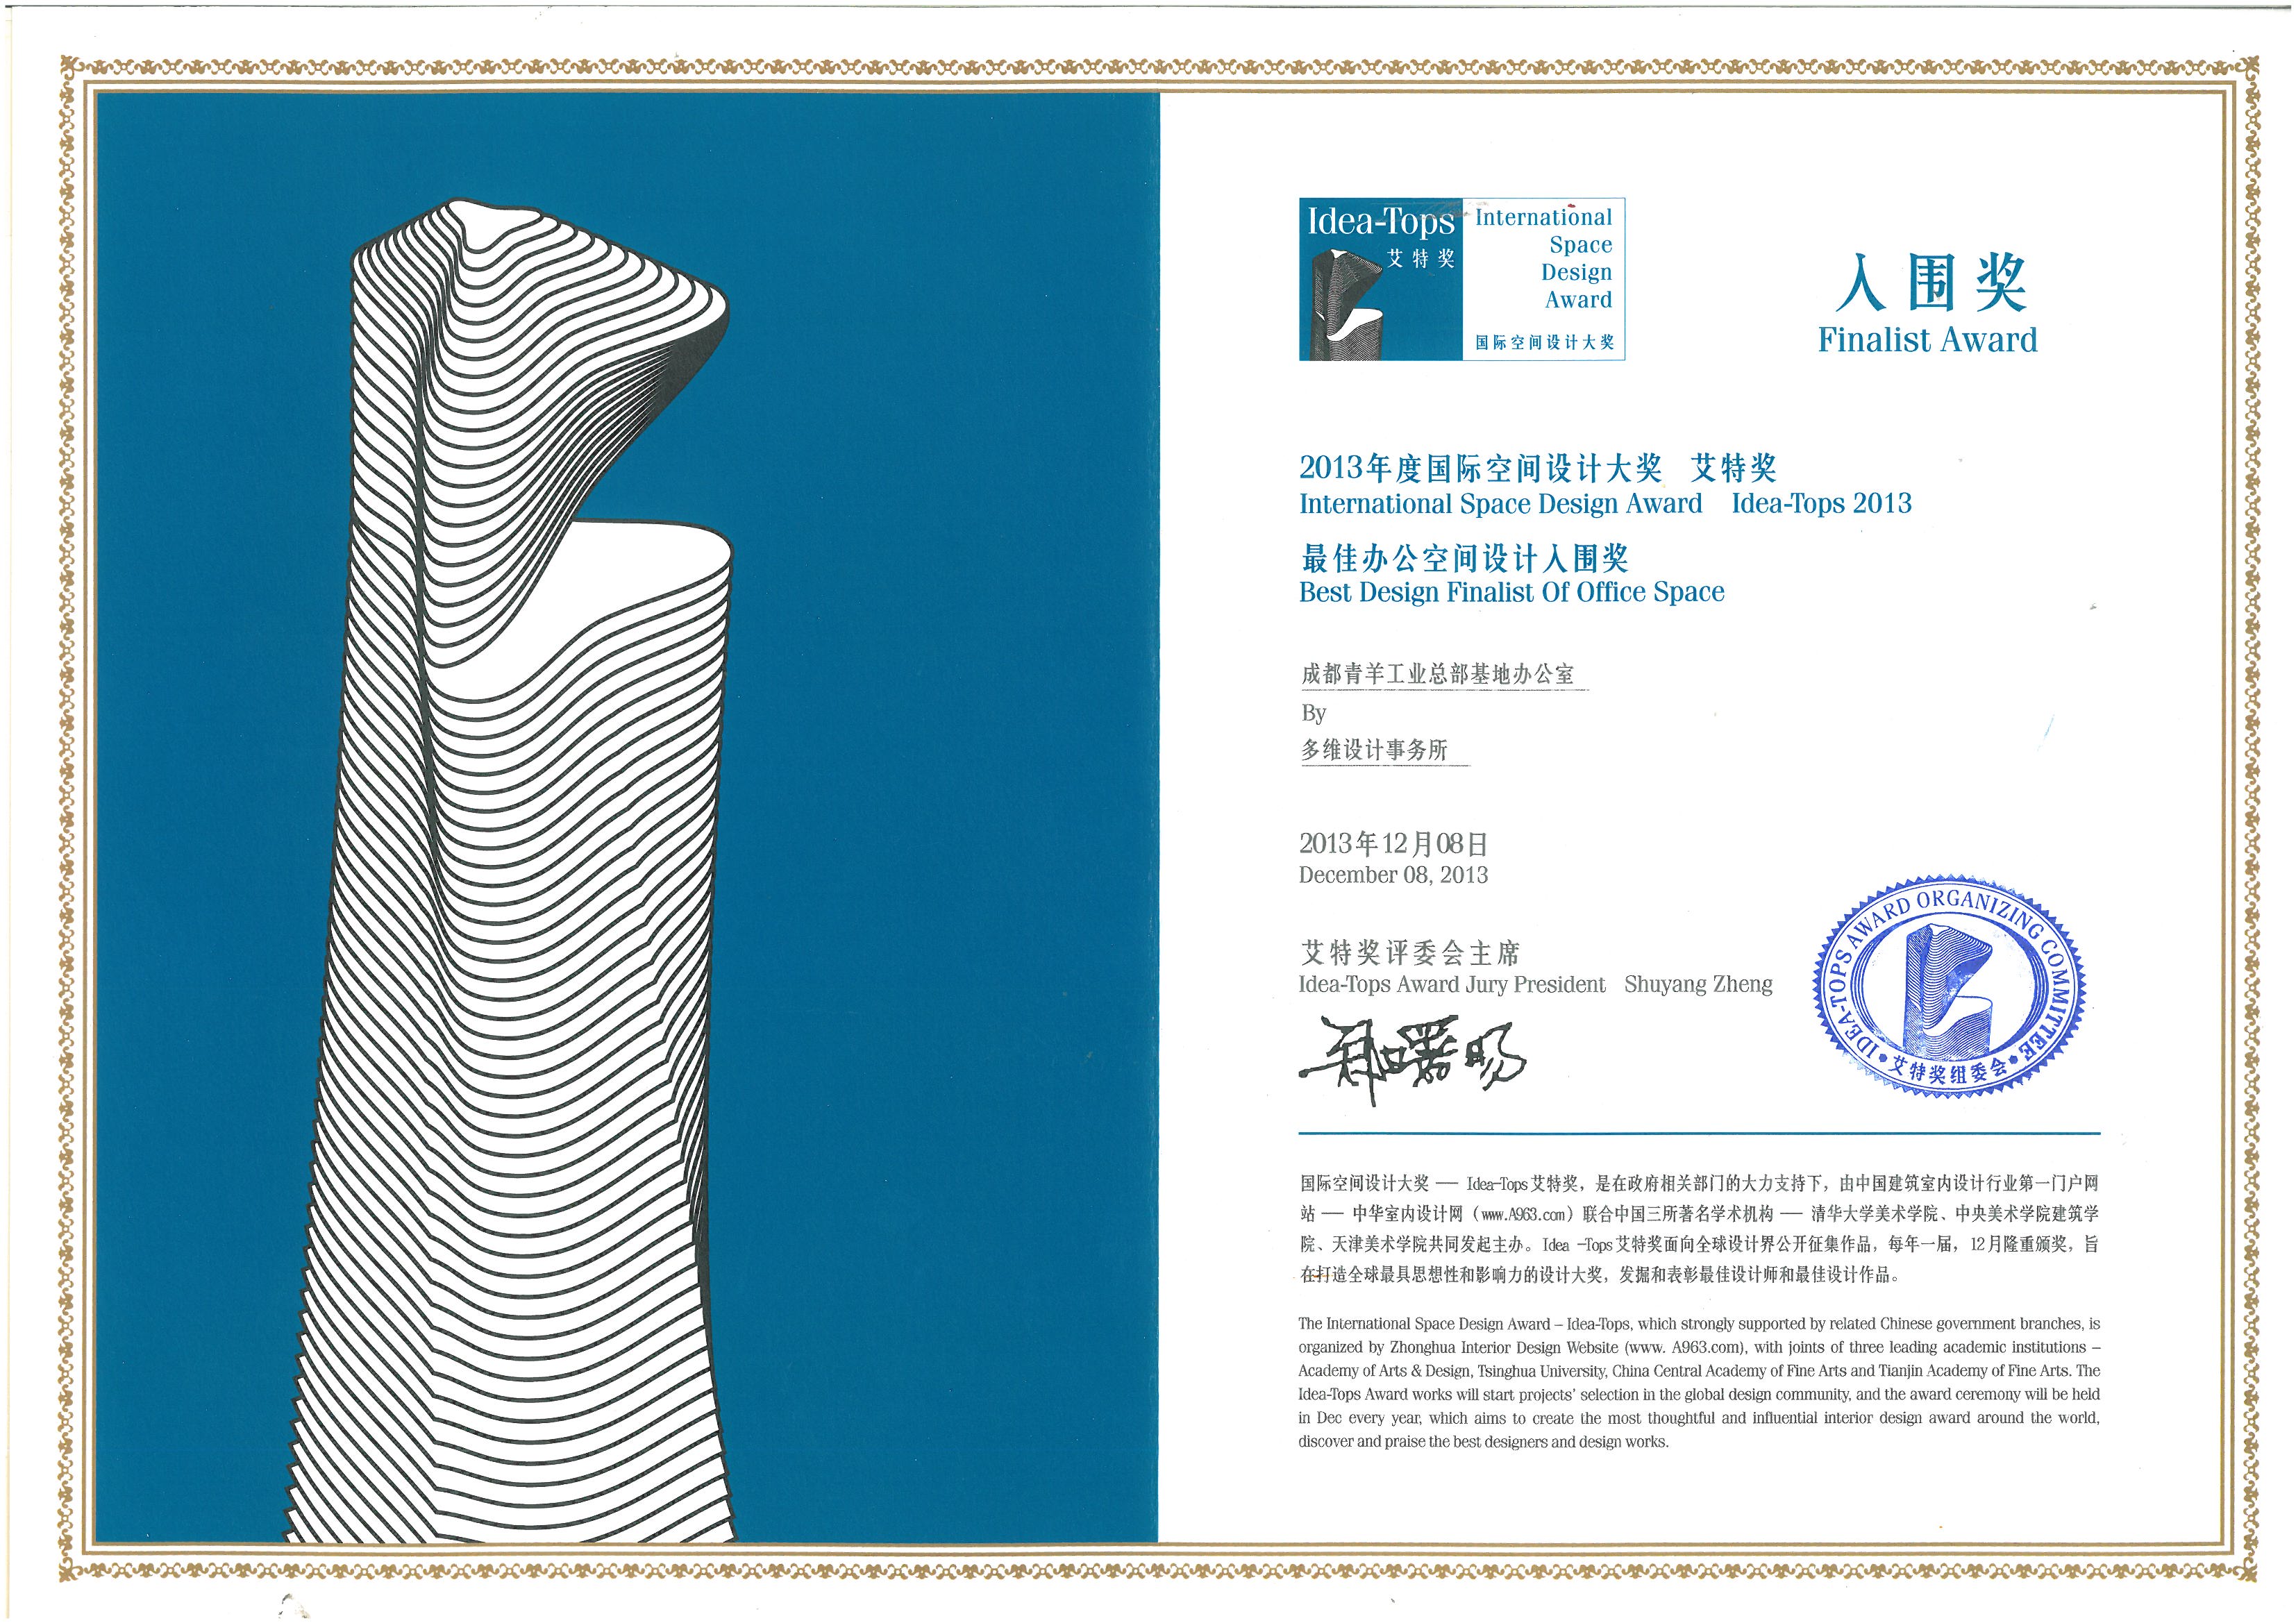 2013年度国际空间设计大奖艾特奖最佳办公空间设计入围奖：成都青羊工业总部基地办公室